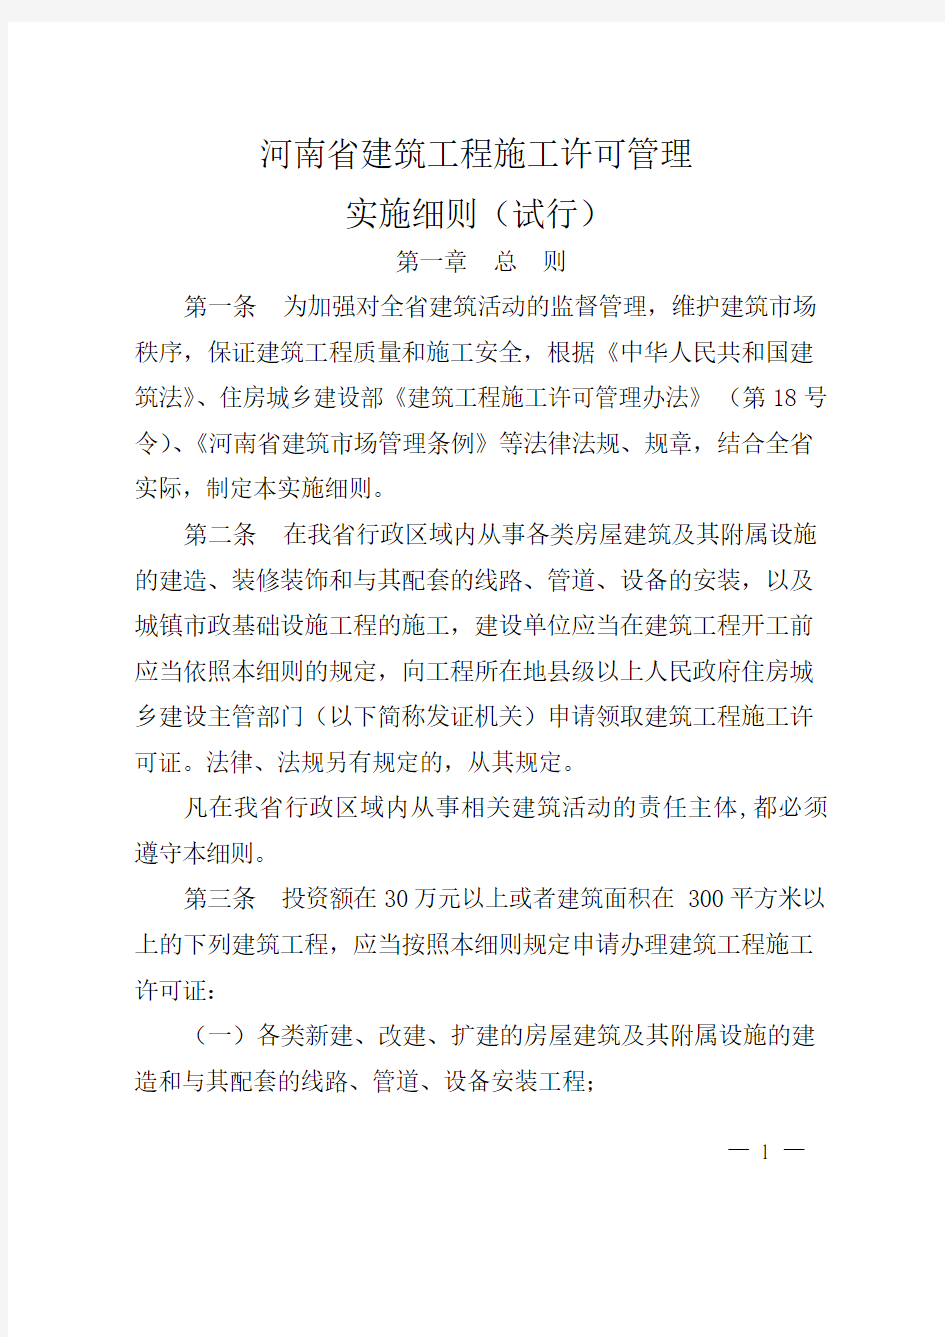 豫建〔2014〕146号《河南省建筑工程施工许可管理实施细则(试行)》